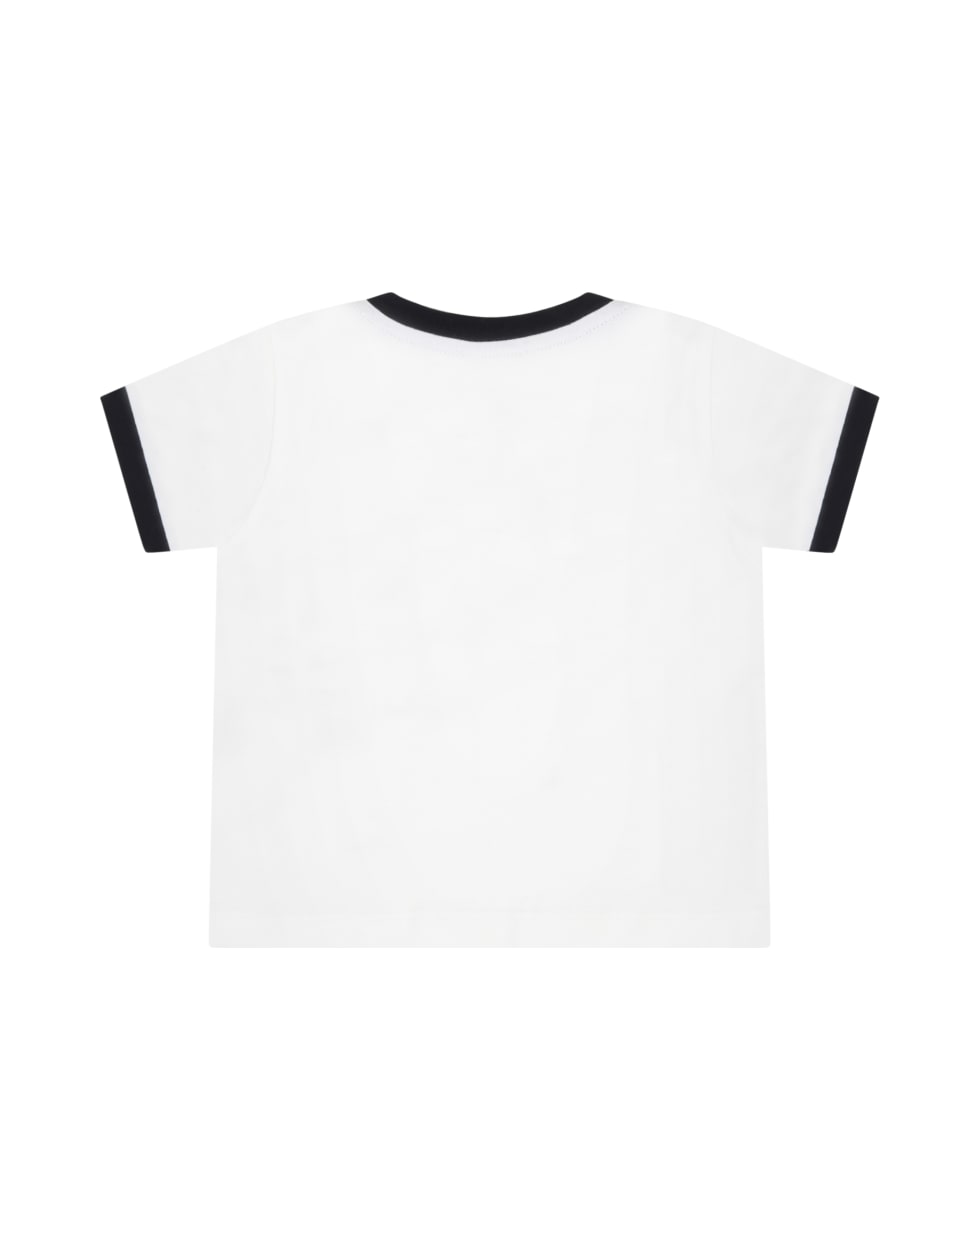 Dolce & Gabbana White T-shirt For Babyboy With Logo - Panna